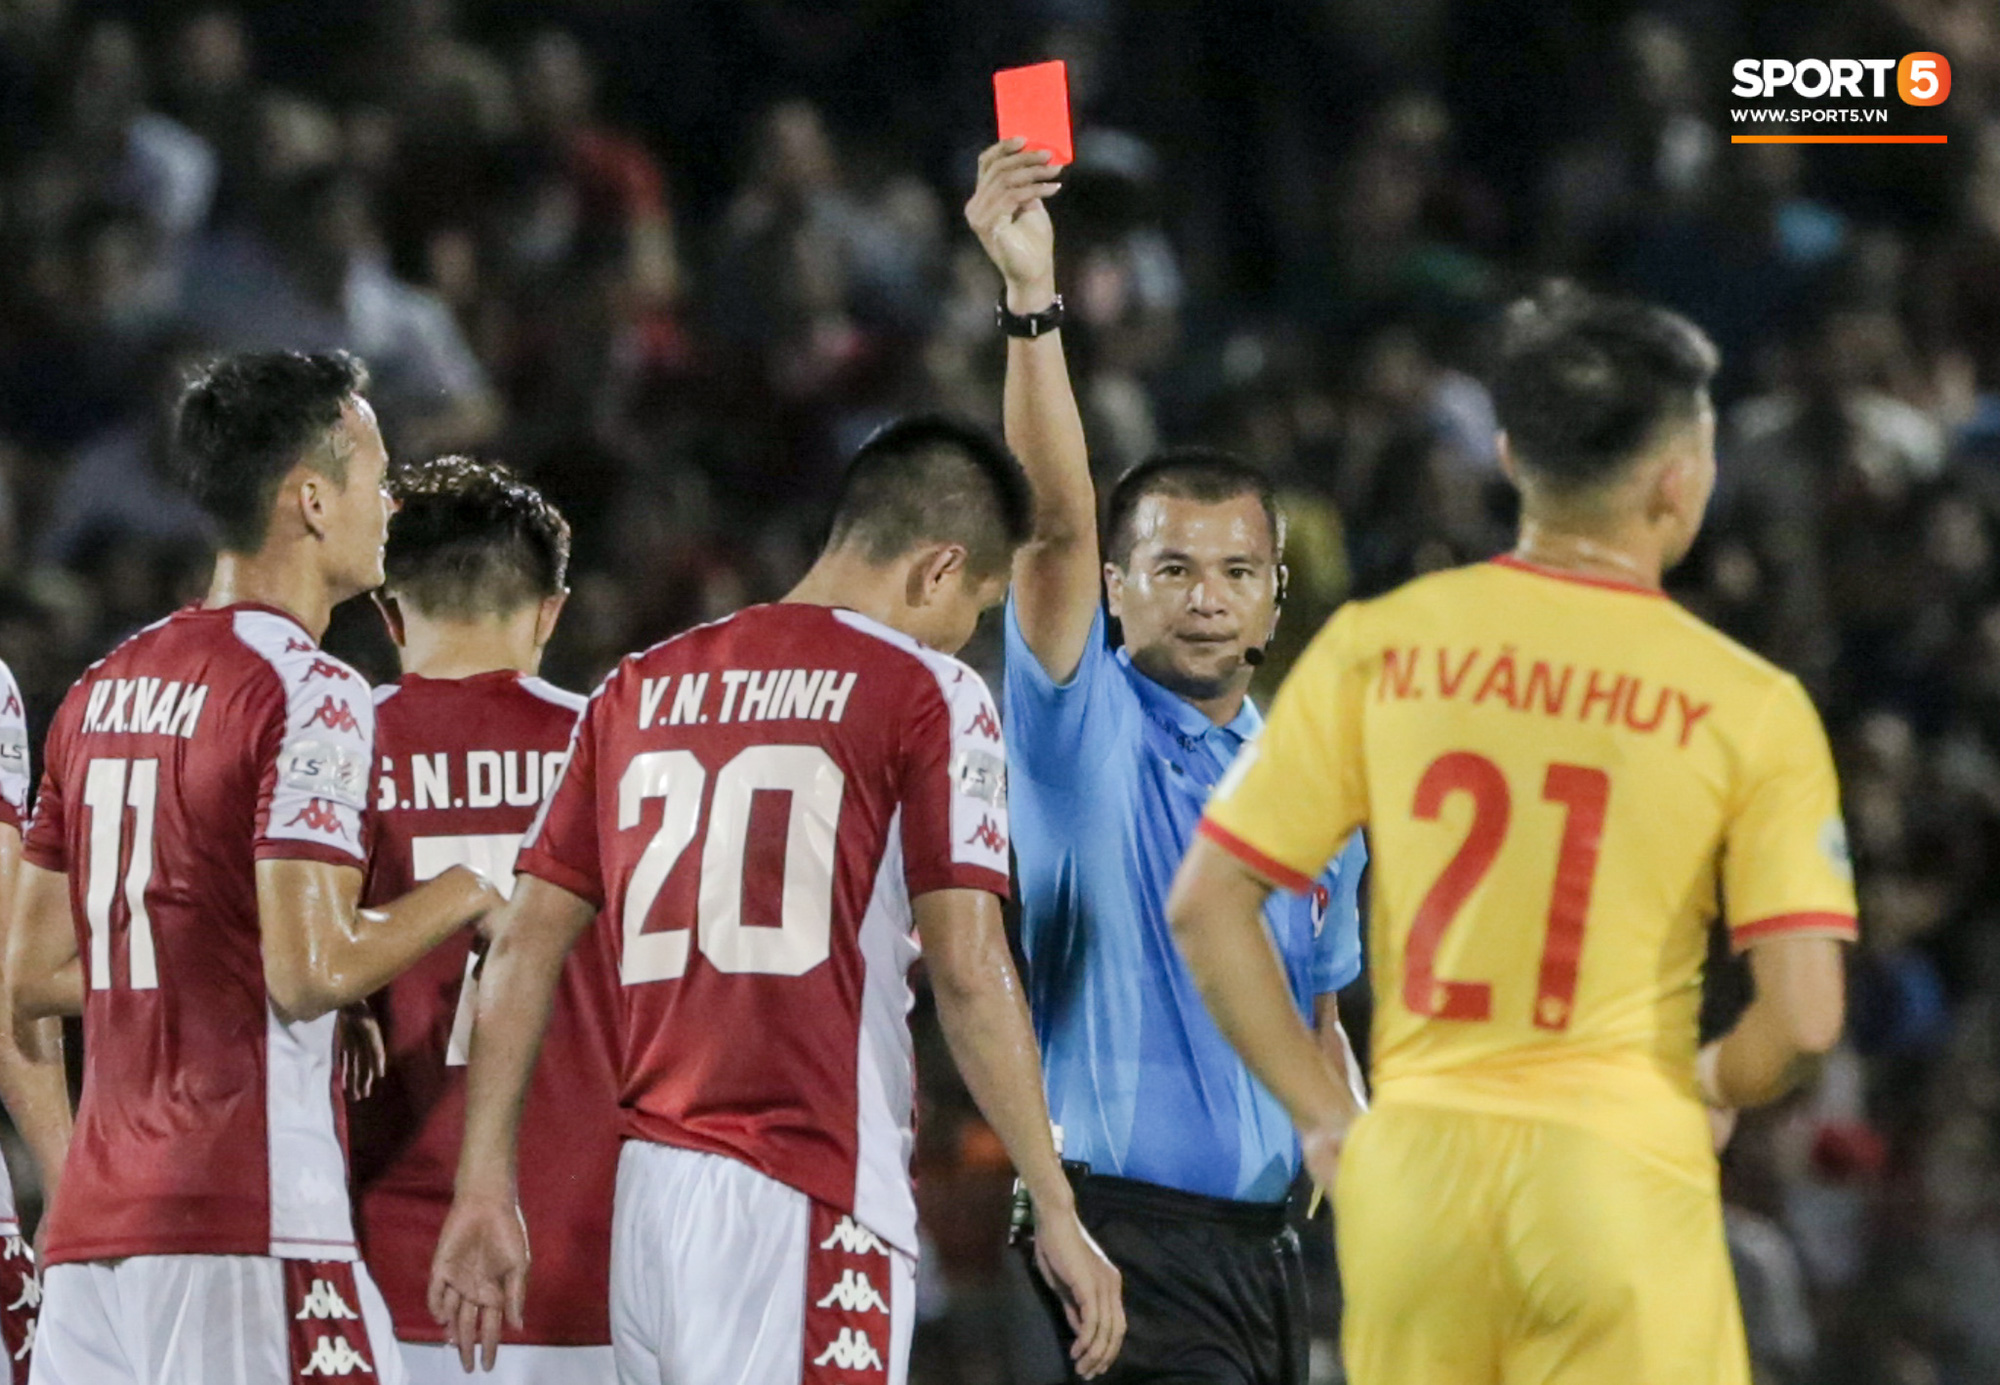 Cựu tuyển thủ Việt Nam phạm lỗi thô thiển, nhận cái kết đắng trong lần hiếm hoi được đá chính - Ảnh 3.